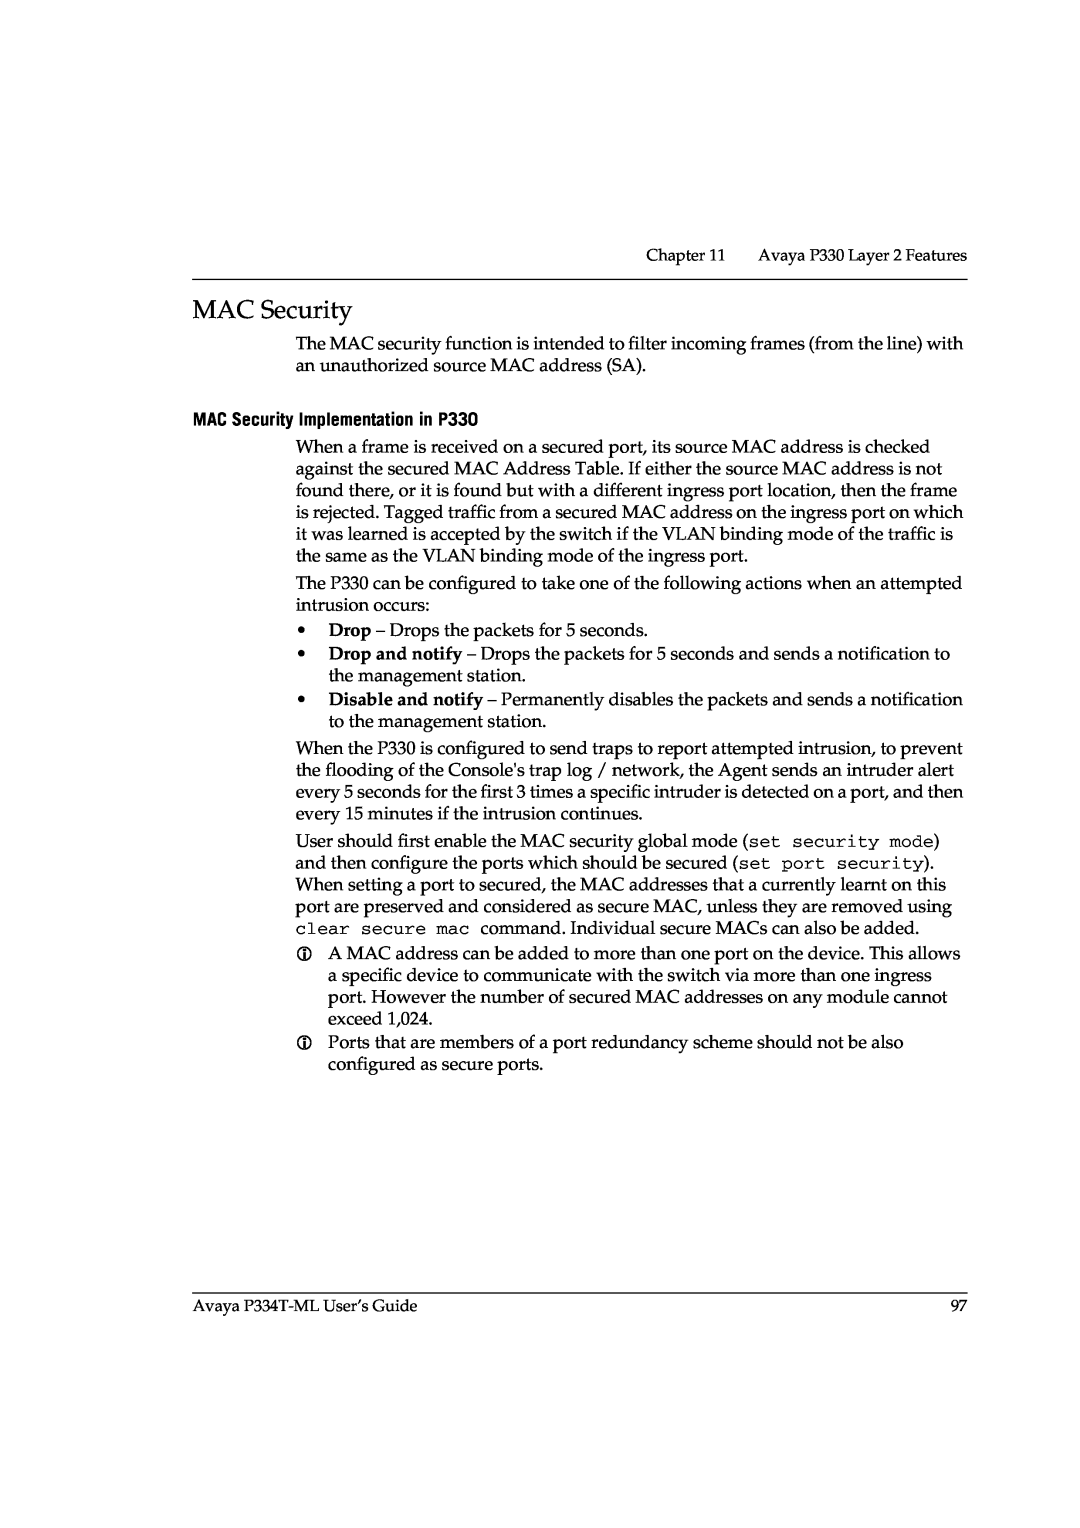 Avaya P3343T-ML manual MAC Security Implementation in P330 